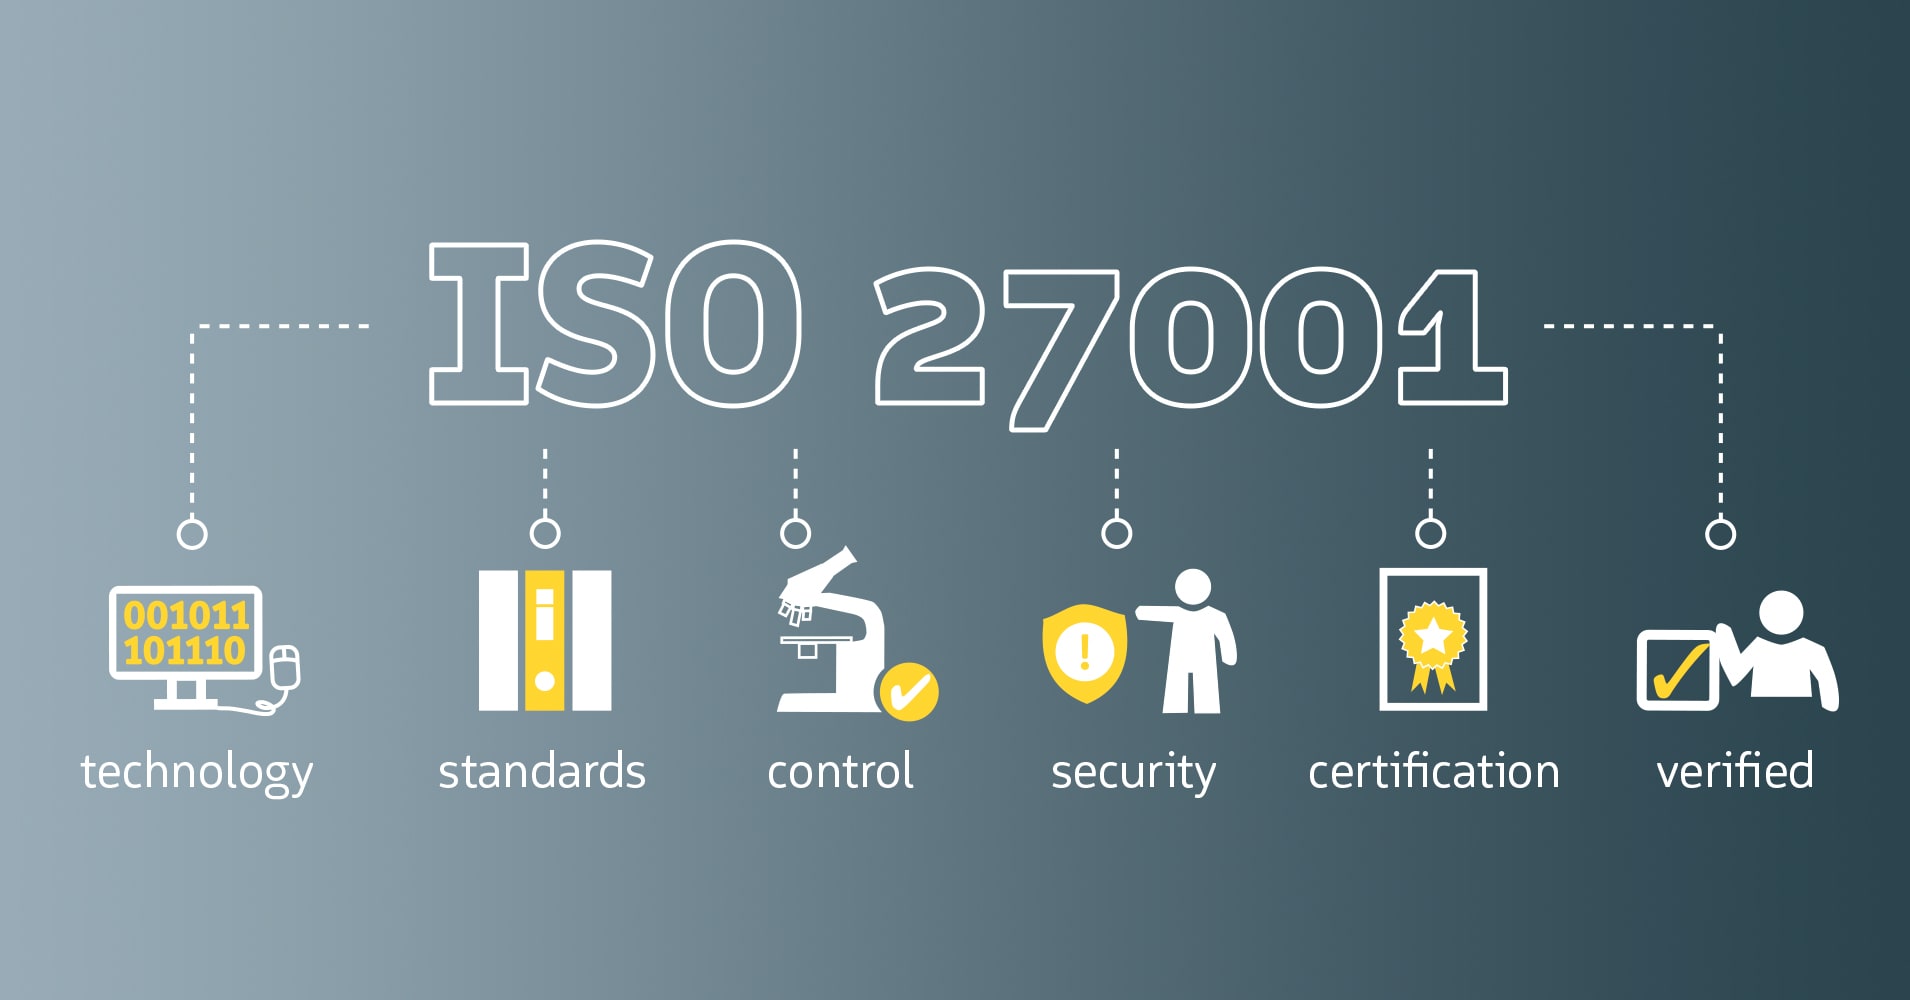 SKIDATA is ISO 27001 gecertificeerd